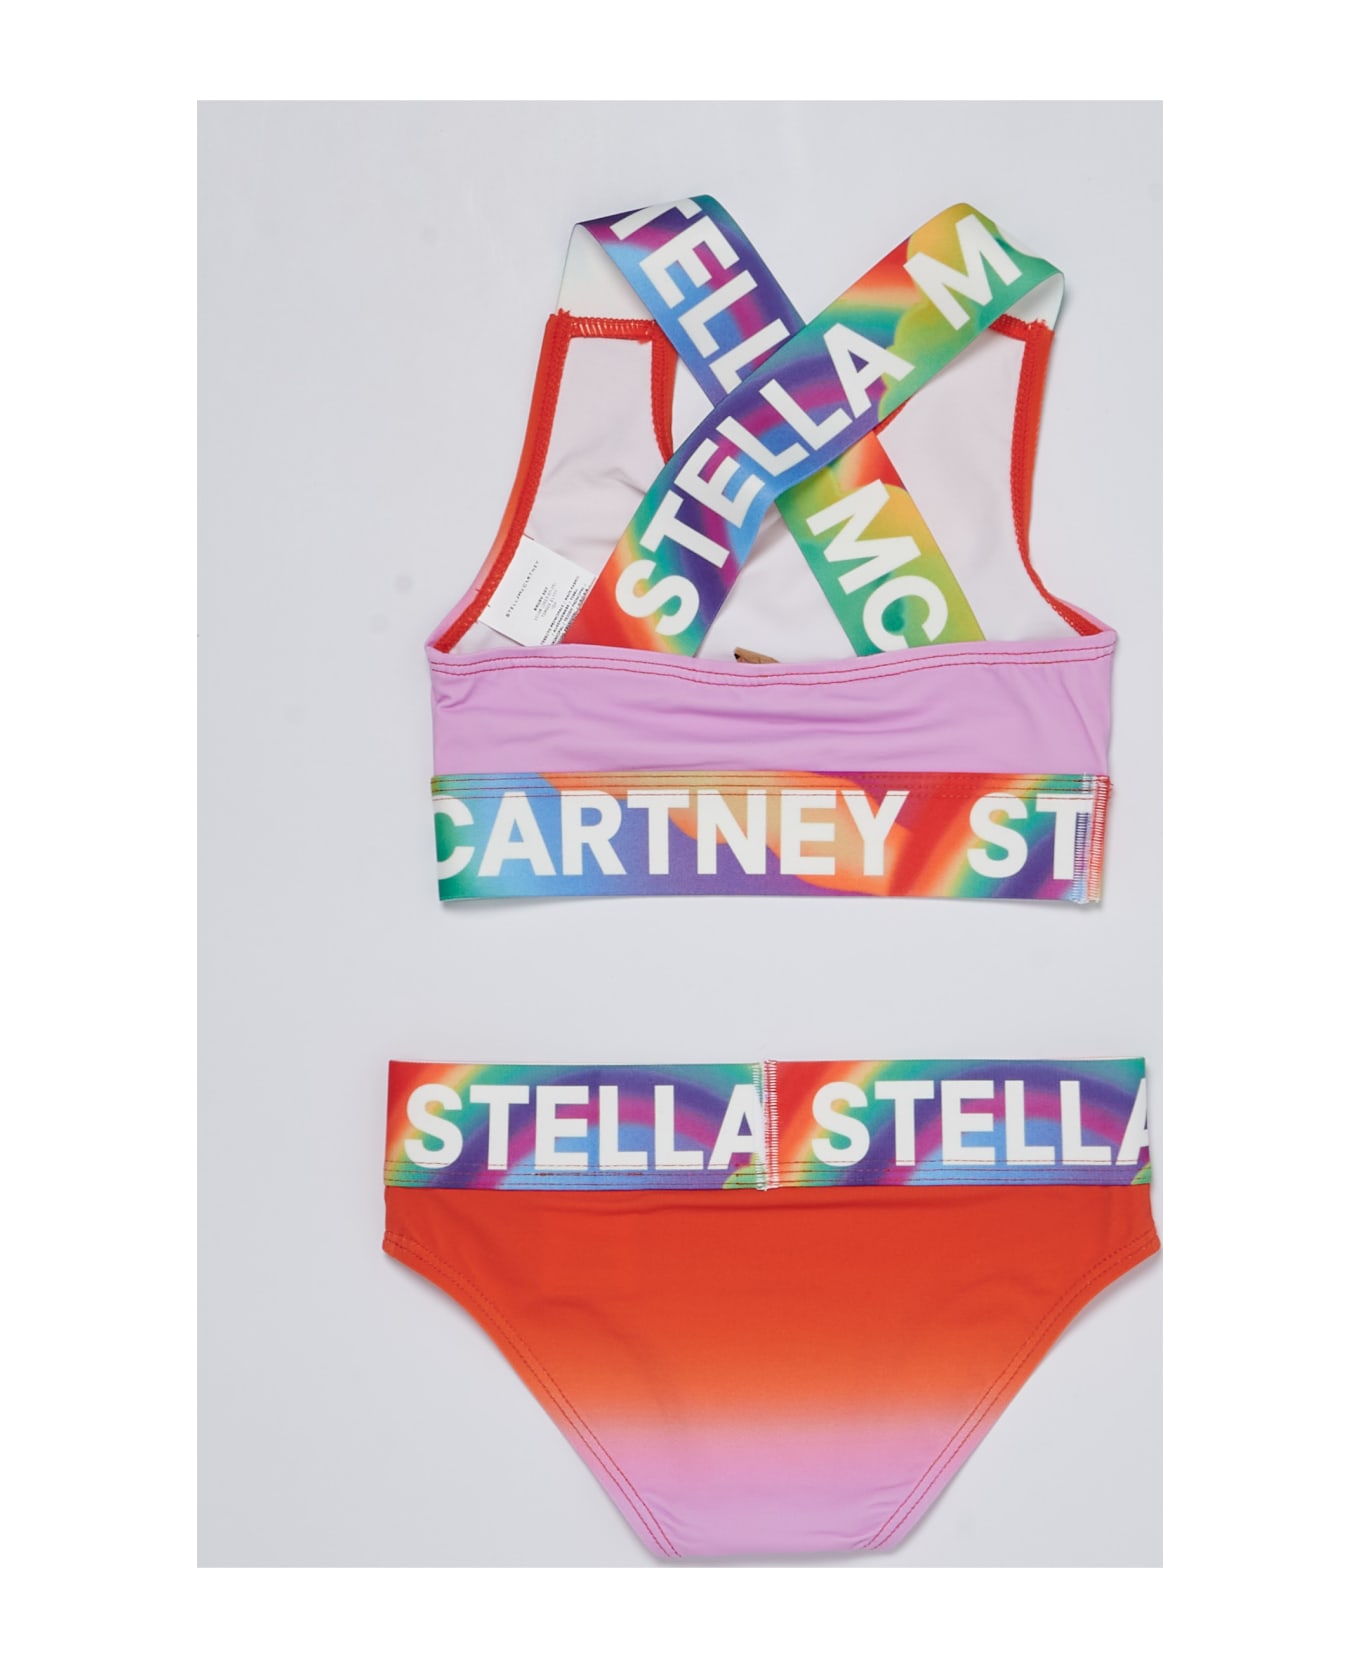 Stella Cal McCartney Bikini Bikini - CORALLO-MULTICOLOR 